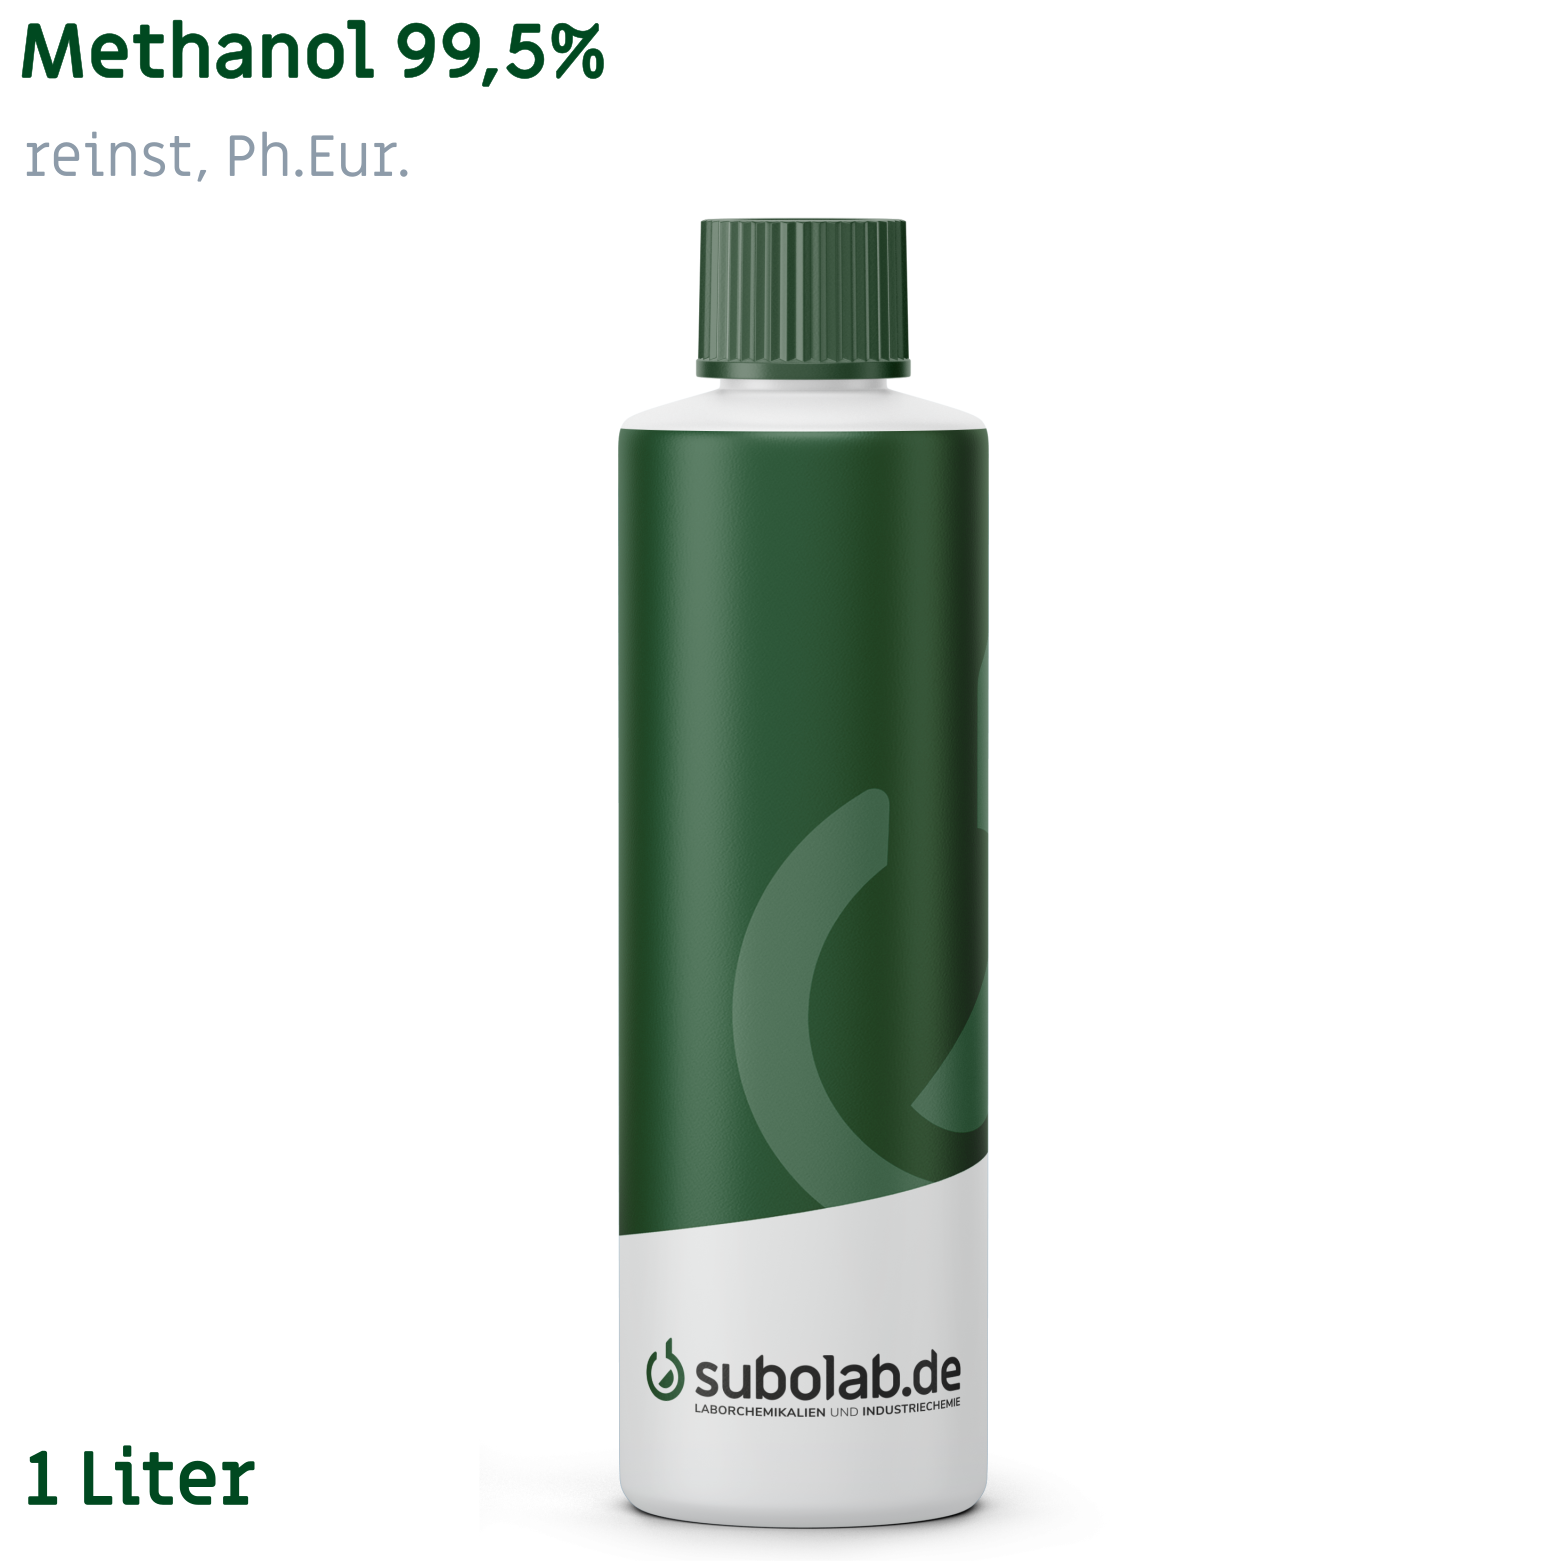 Bild von Methanol 99,5% reinst, Ph.Eur. (1 Liter)